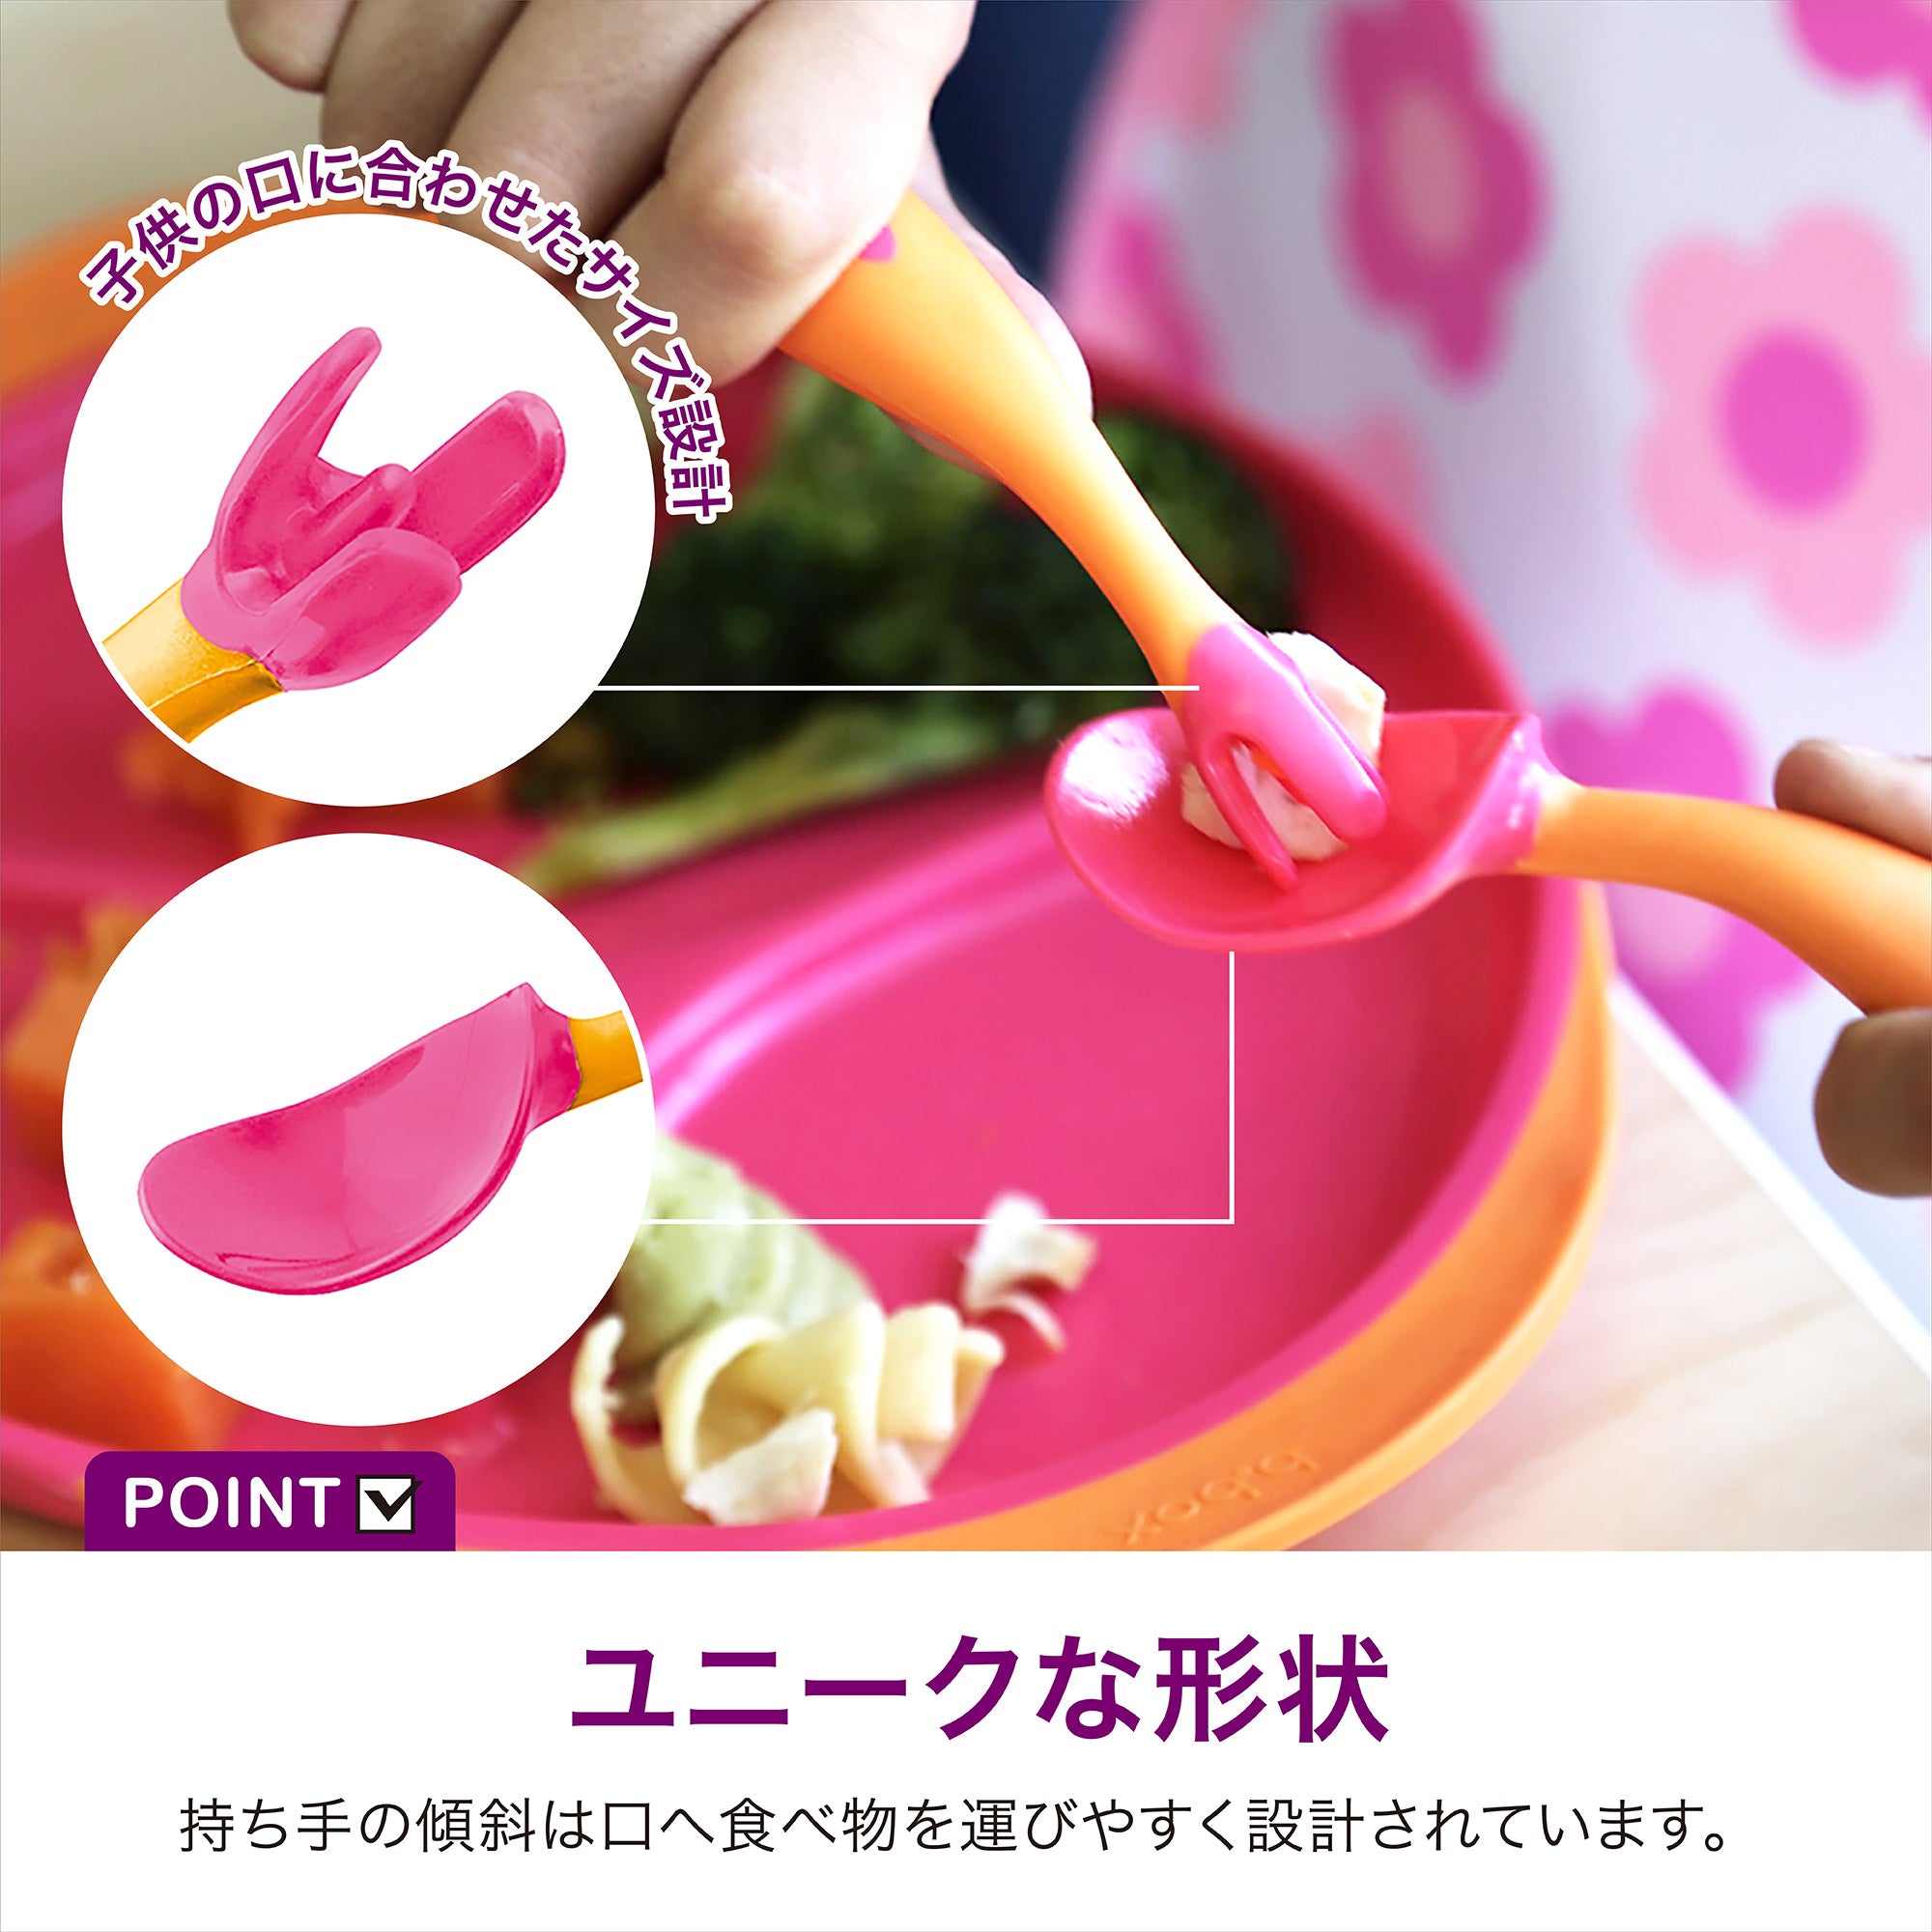 【先行予約】*b.box* Toddler cutlery set カトラリーセット -tuttifrutti - b.box Japan